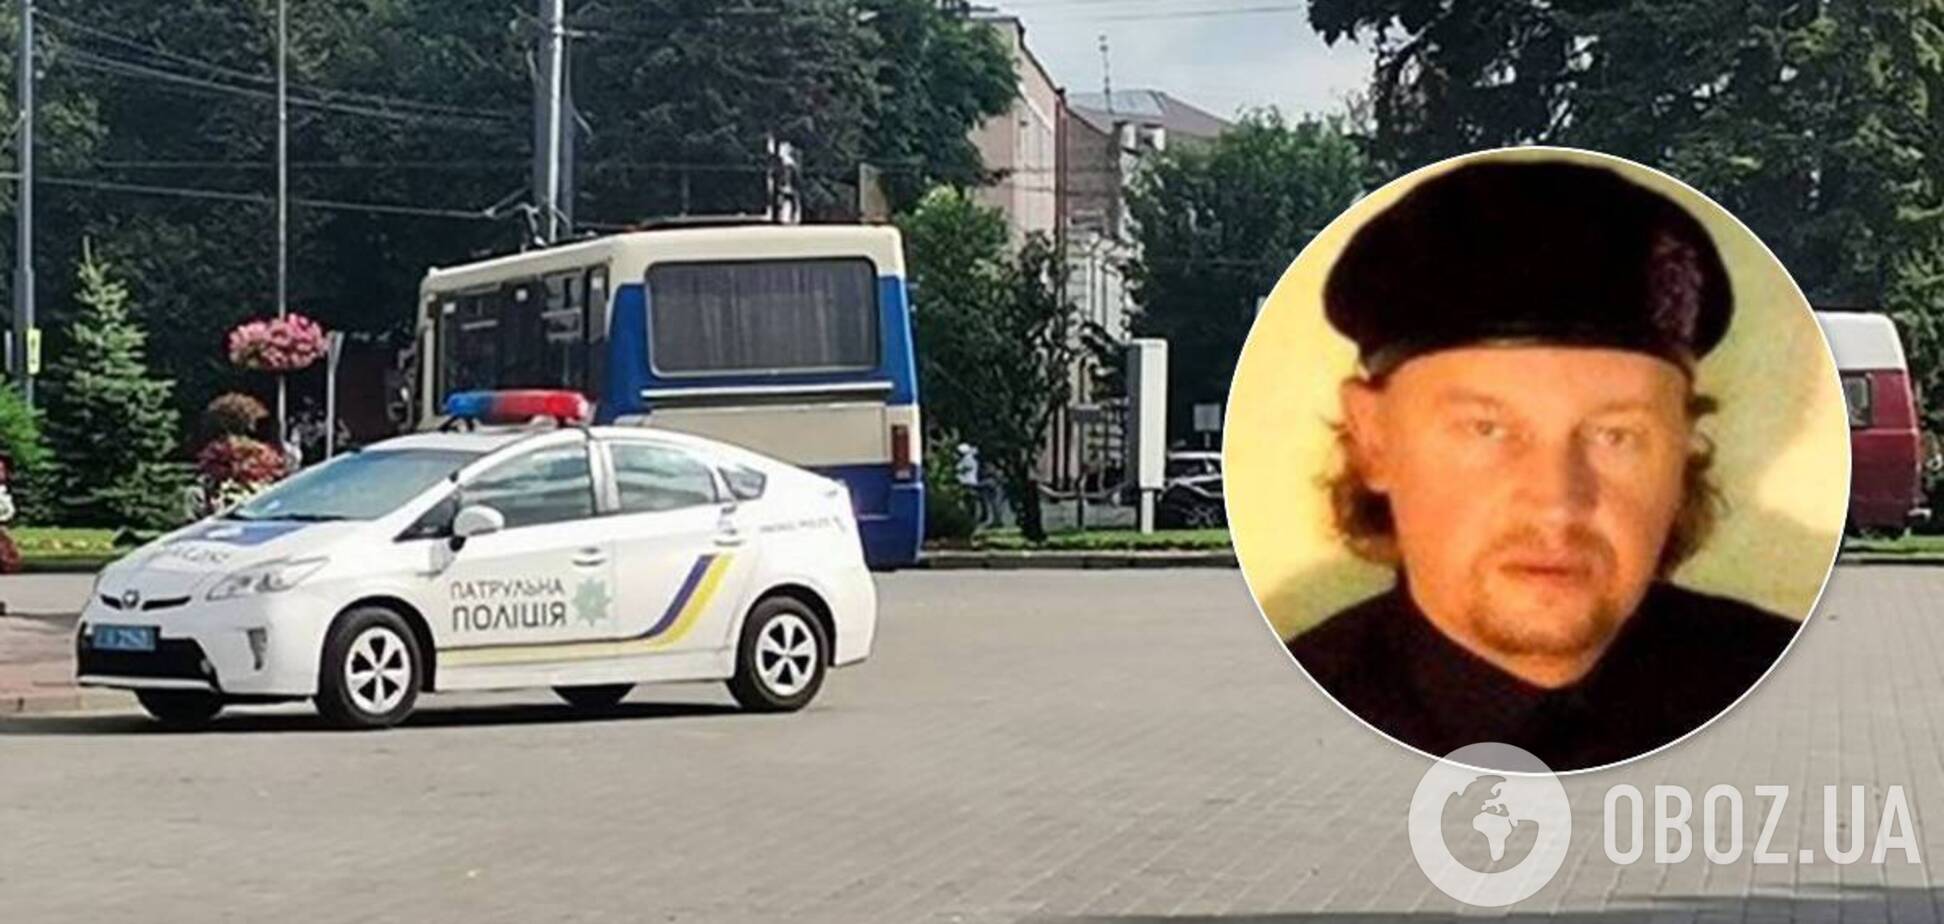 Психолог про дії терориста в Луцьку: він може здатися, але люди в небезпеці